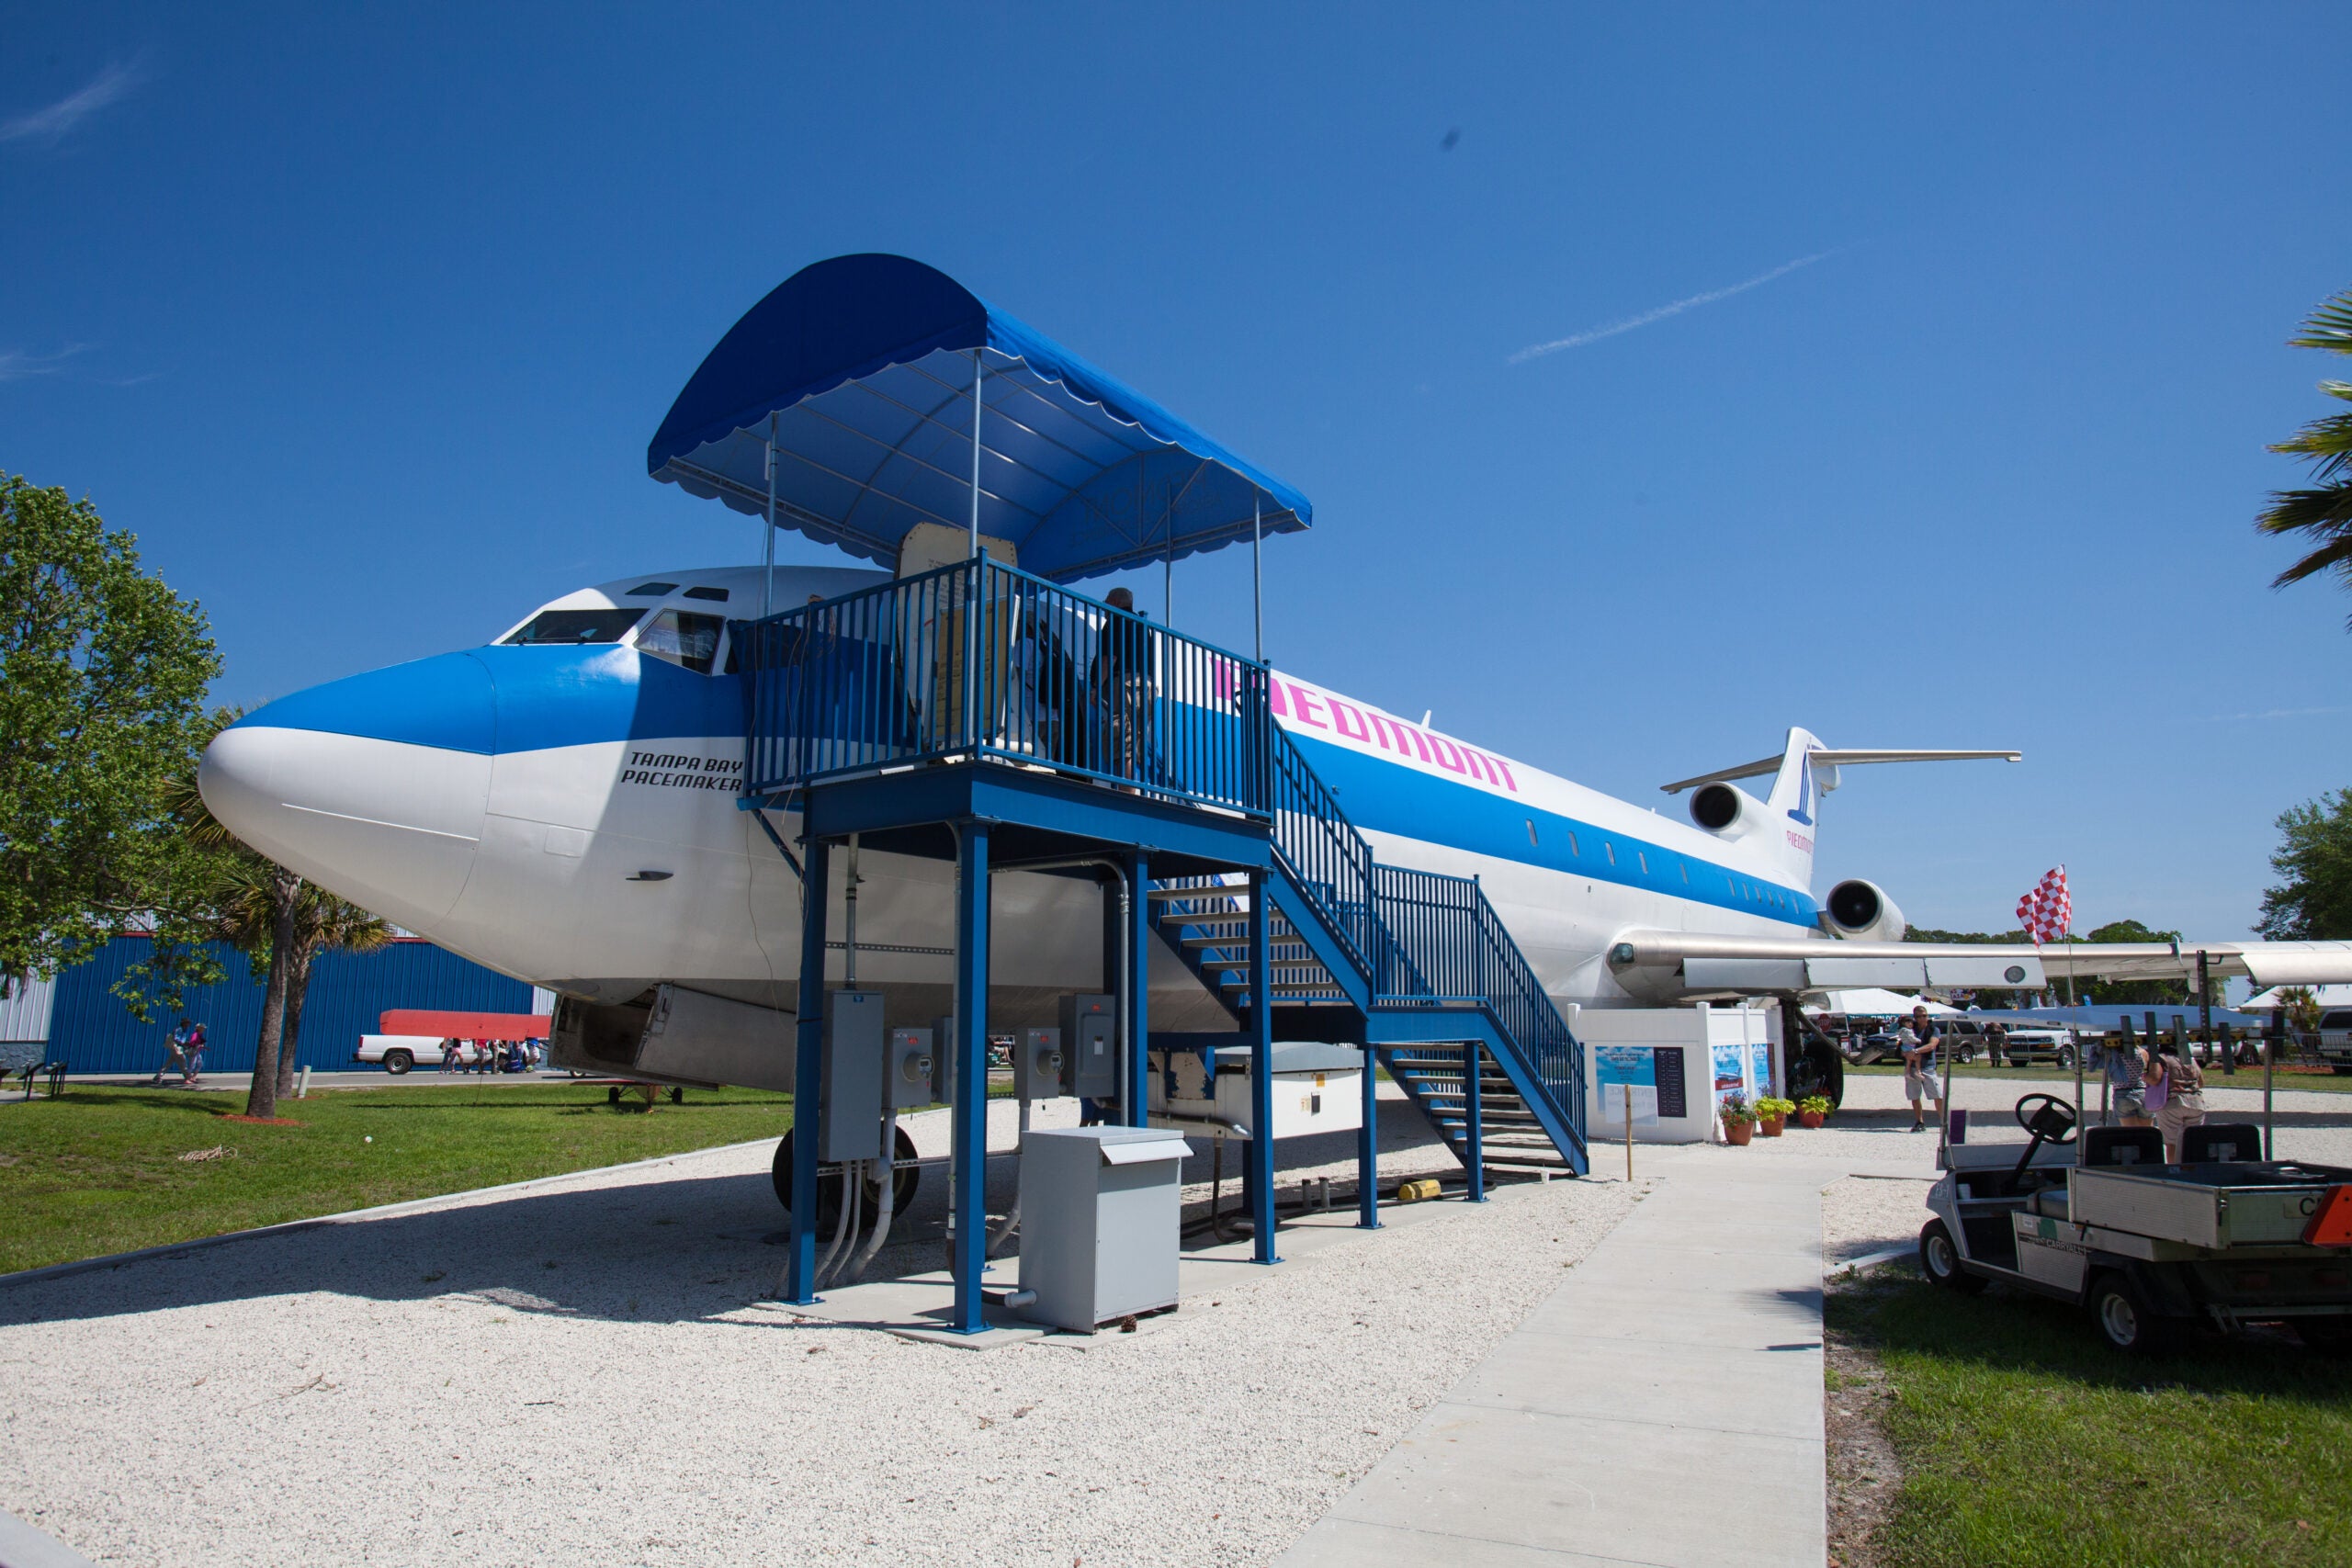 Boeing 727 Classroom Opens on Sun ‘n Fun Campus